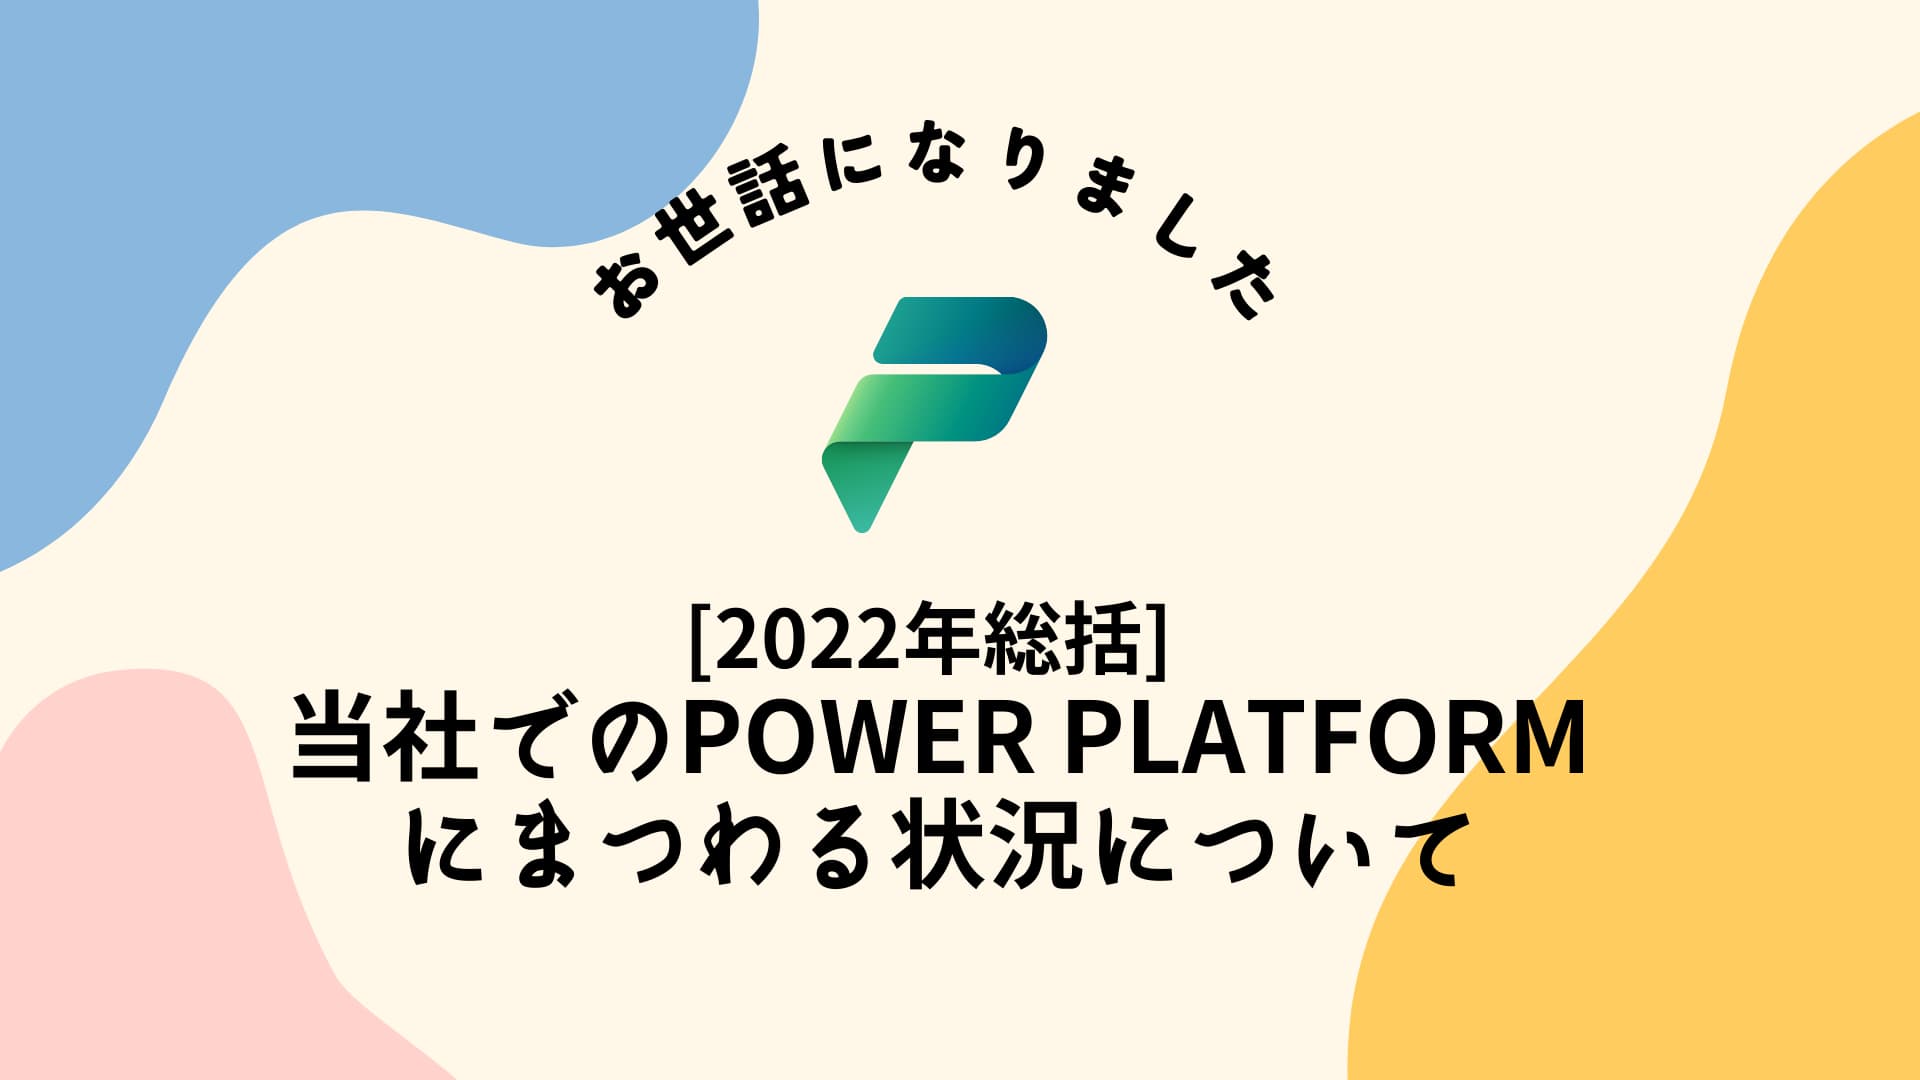 [2022年総括] 当社でのPower Platformにまつわる状況について.jpg